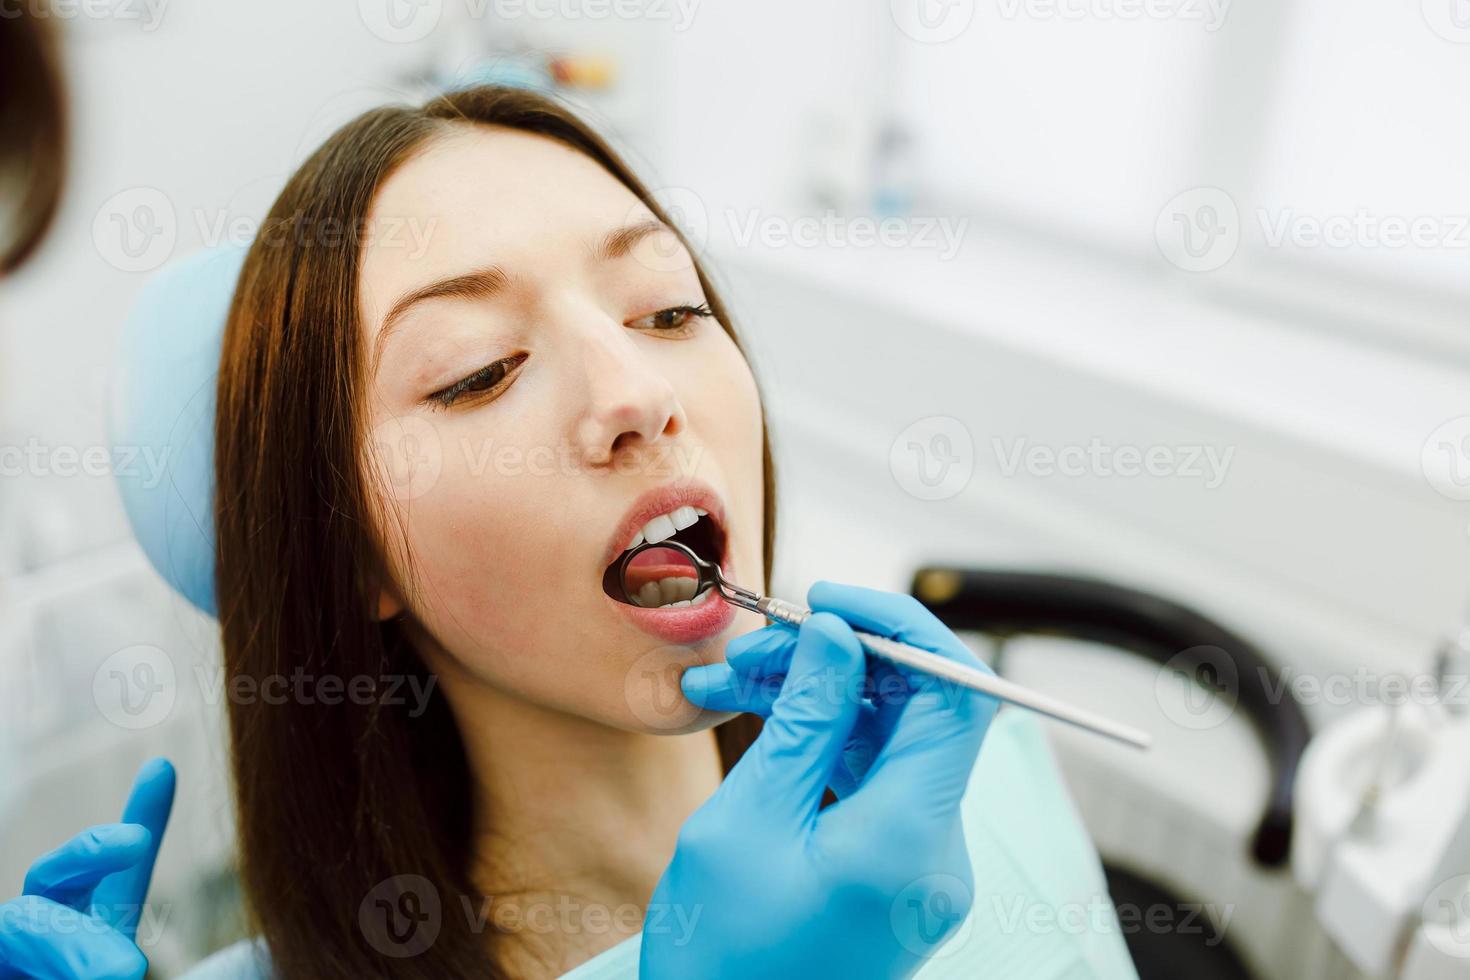 inspeção dos dentes da menina com a ajuda de um espelho foto